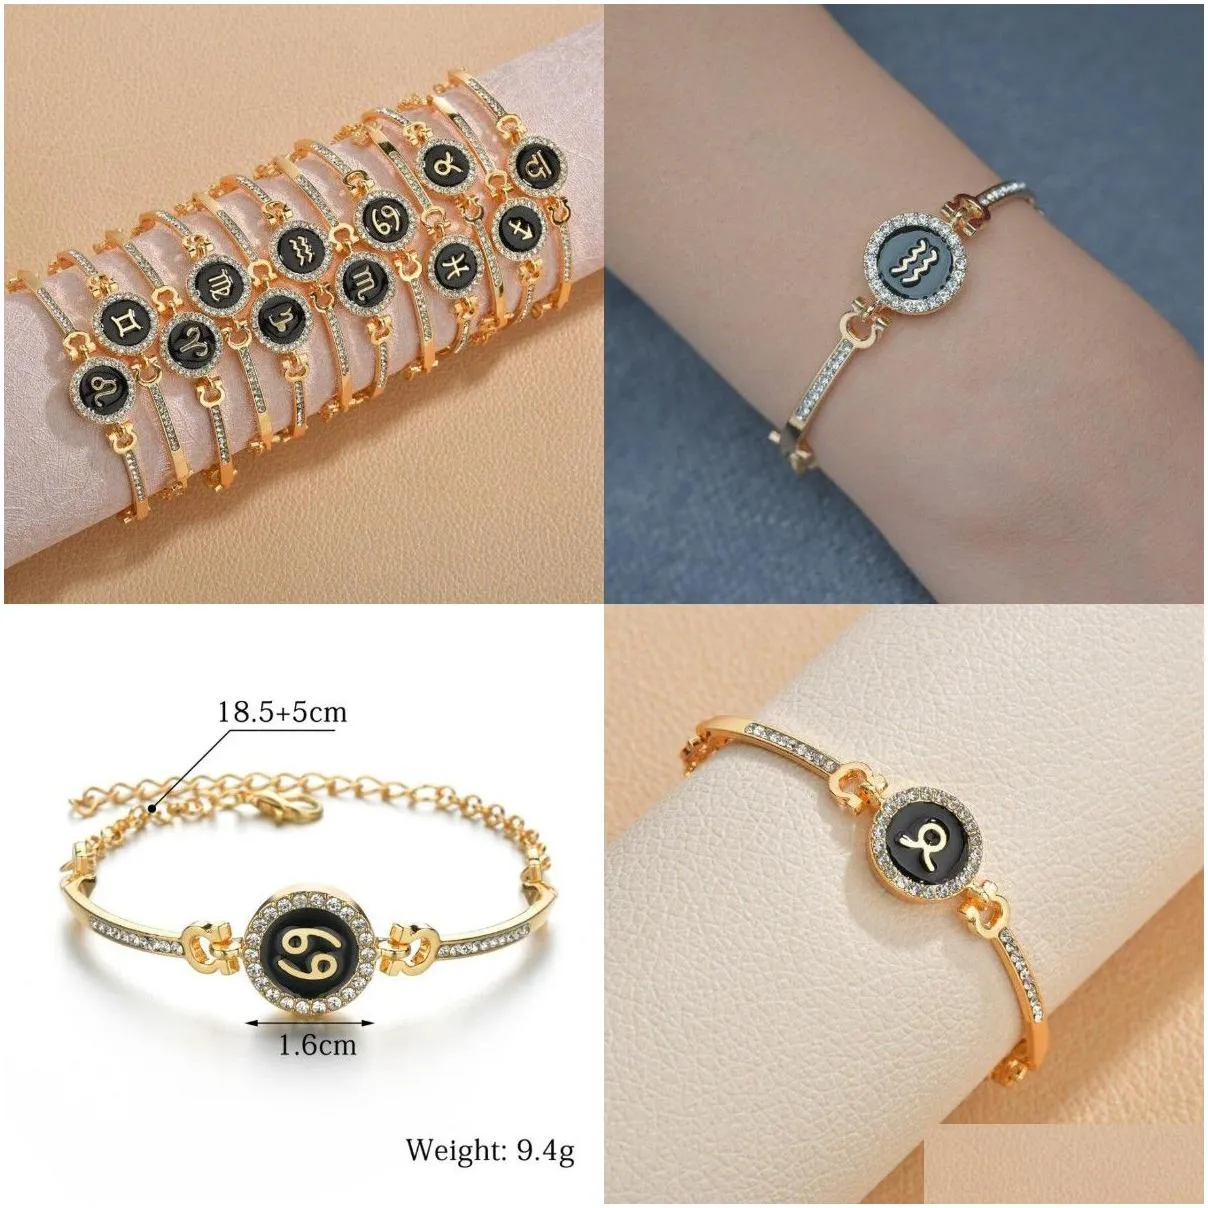 12 zodiac signs constellation charm bracelet men women fashion rhinestones charm bracelet & bangle birthday gifts